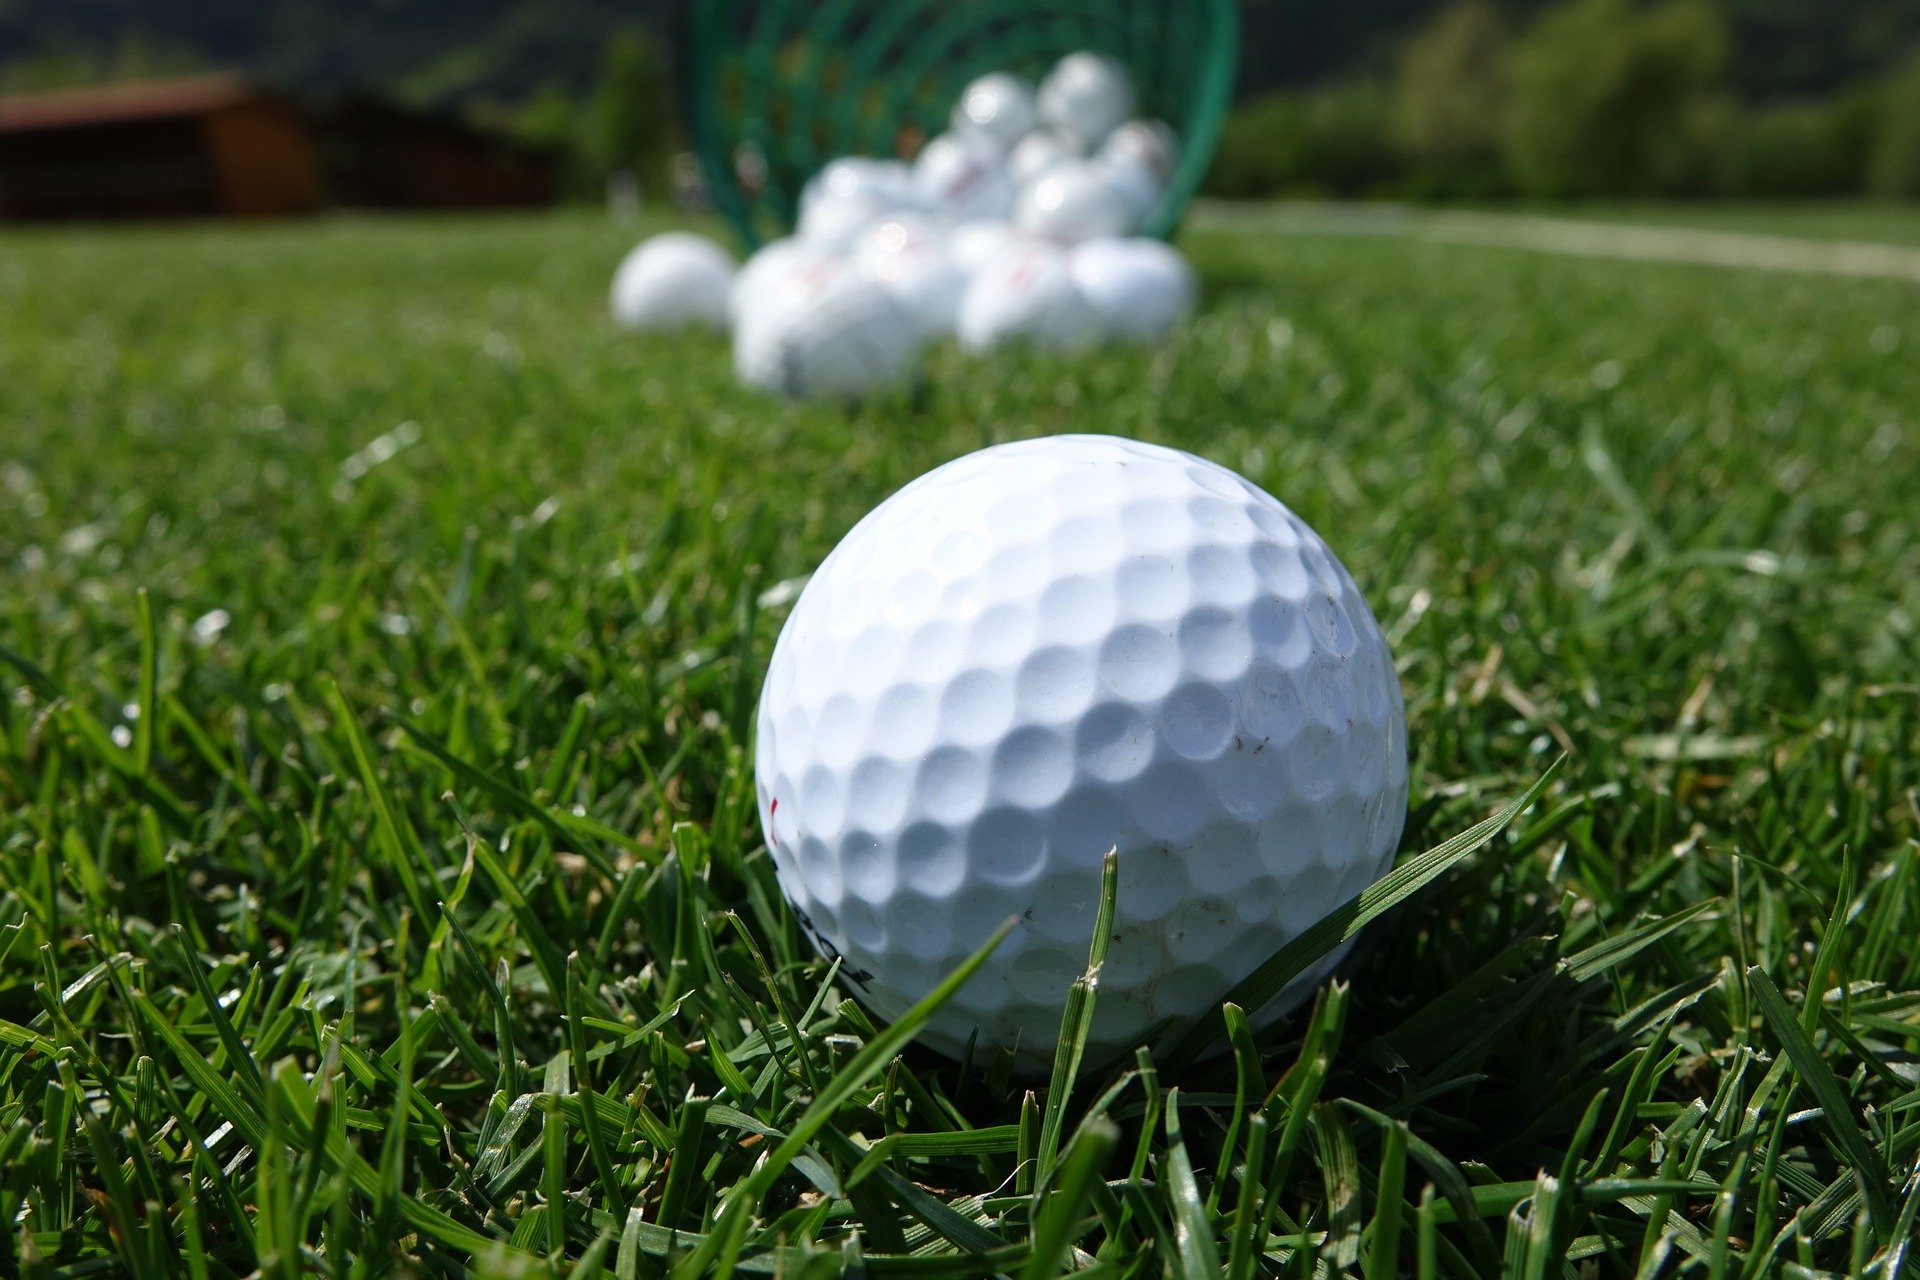 ゴルフボールの 凹凸 ディンプル は何の為にあるの 飛距離アップに繋がっていた 結論 空気抵抗を減らす為 レフティーゴルフ